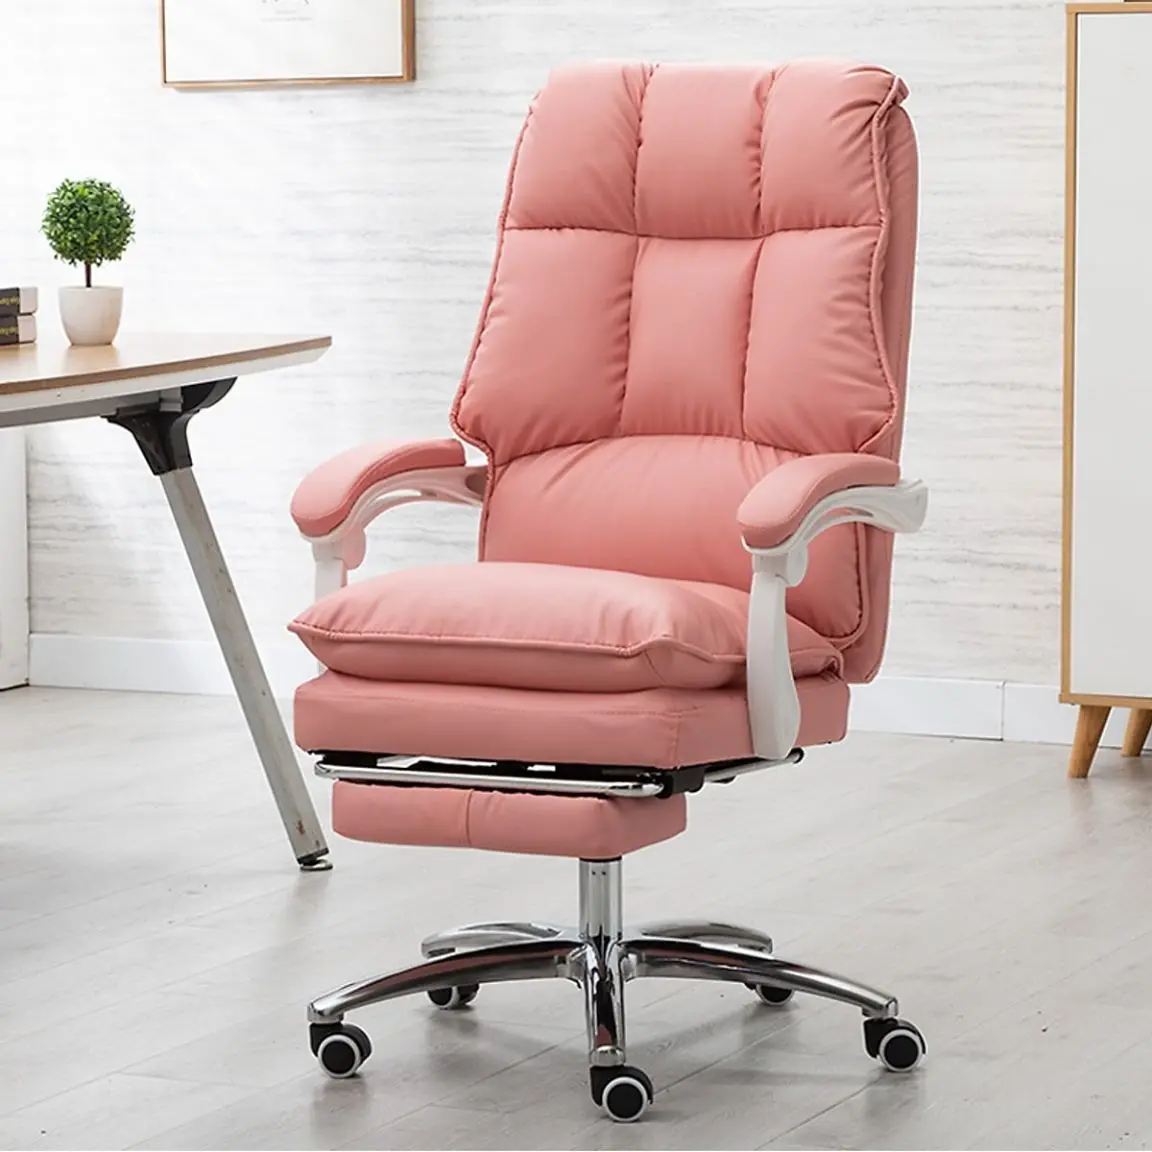 Tìm hiểu nét thu hút của mẫu ghế massage văn phòng màu hồng